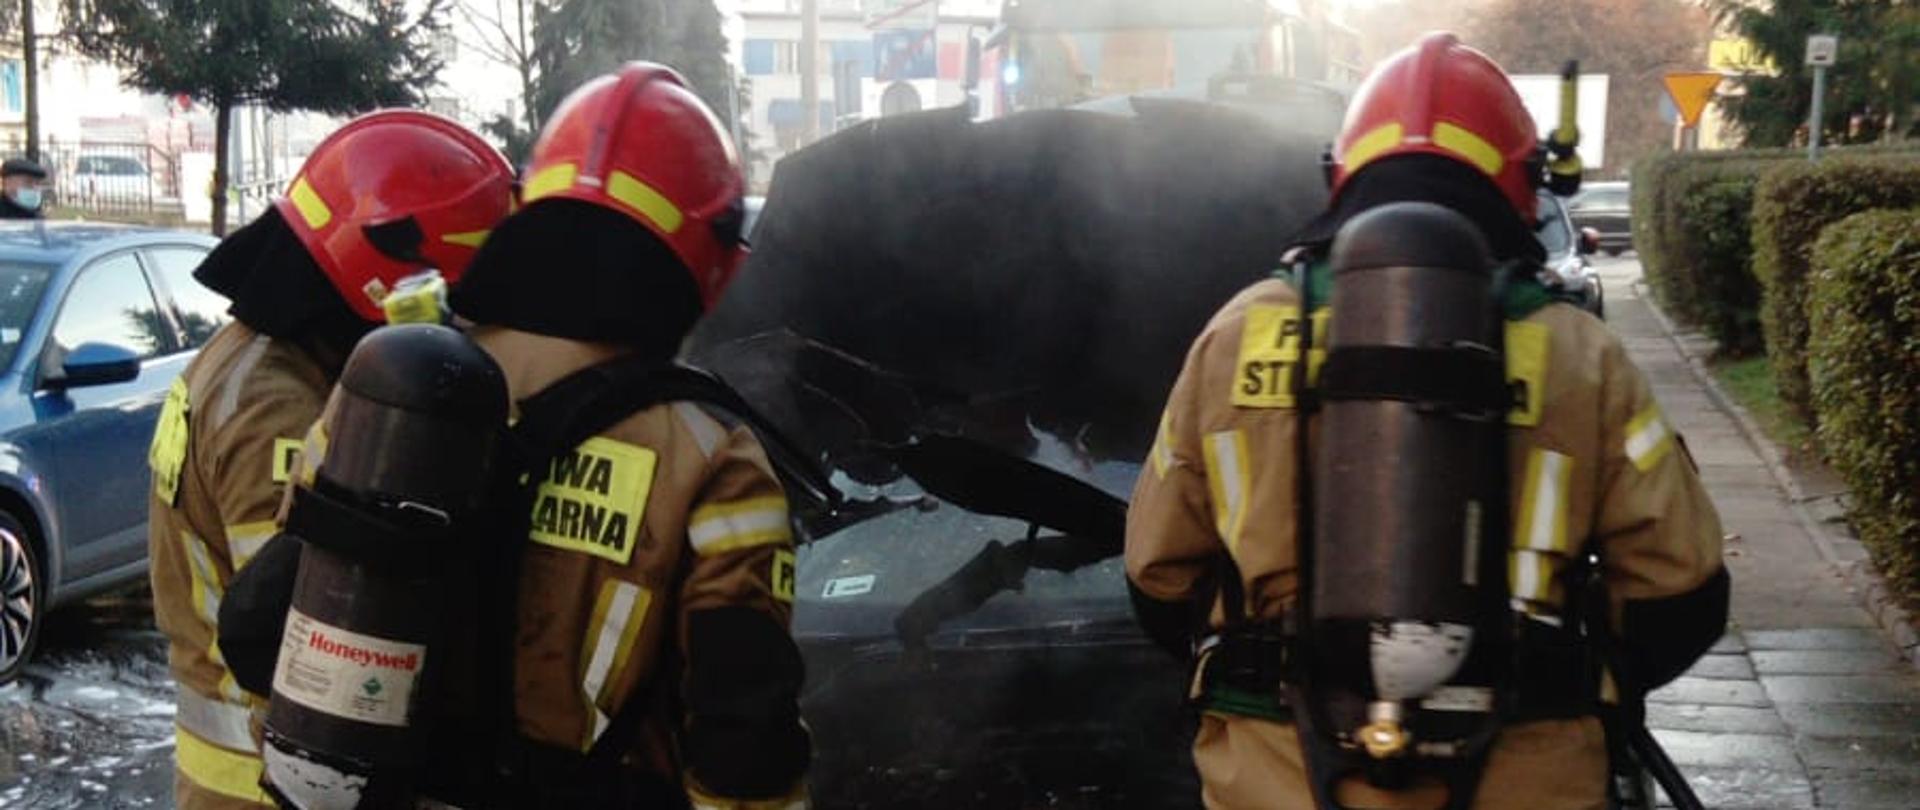 Pożar samochodu osobowego przy ul. Grodkowskiej - Nysa